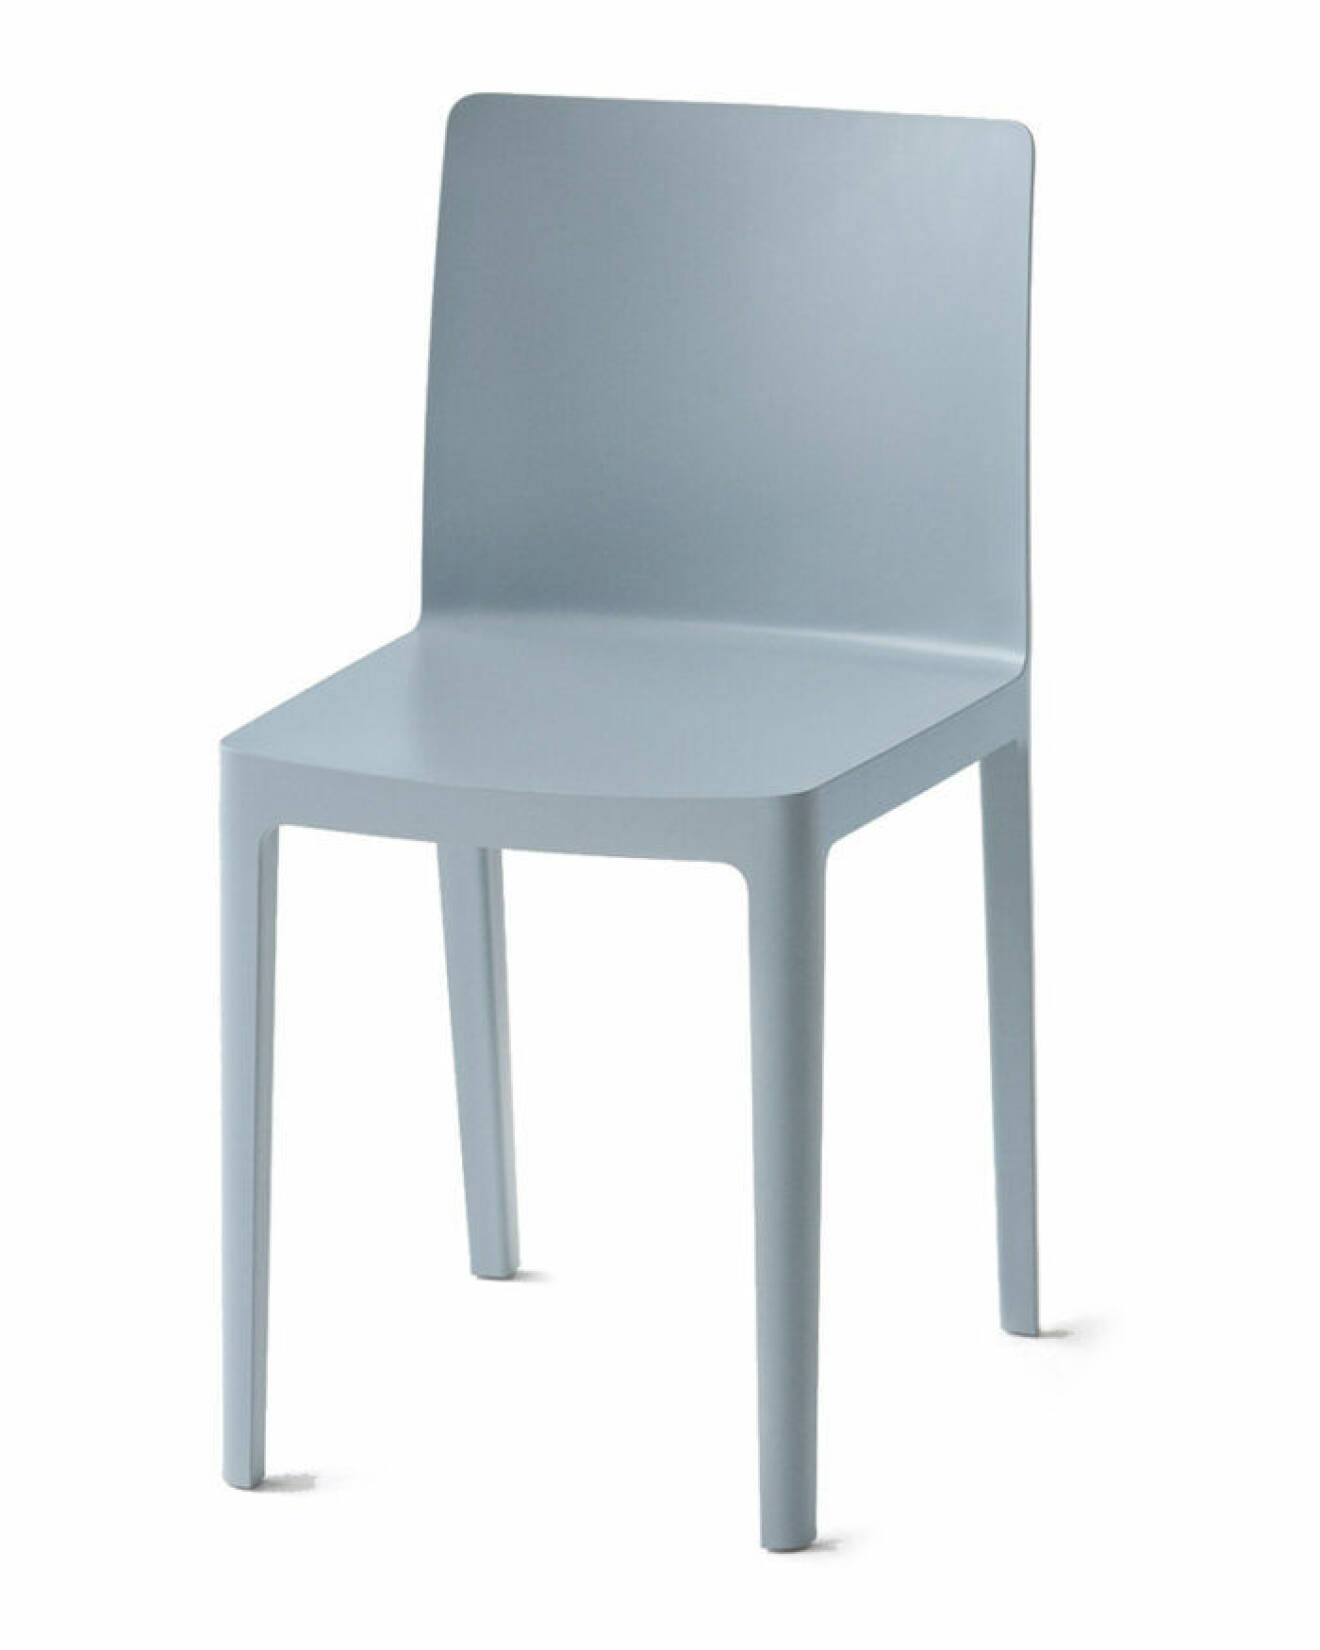 Pastellblå stol till uteplatsen